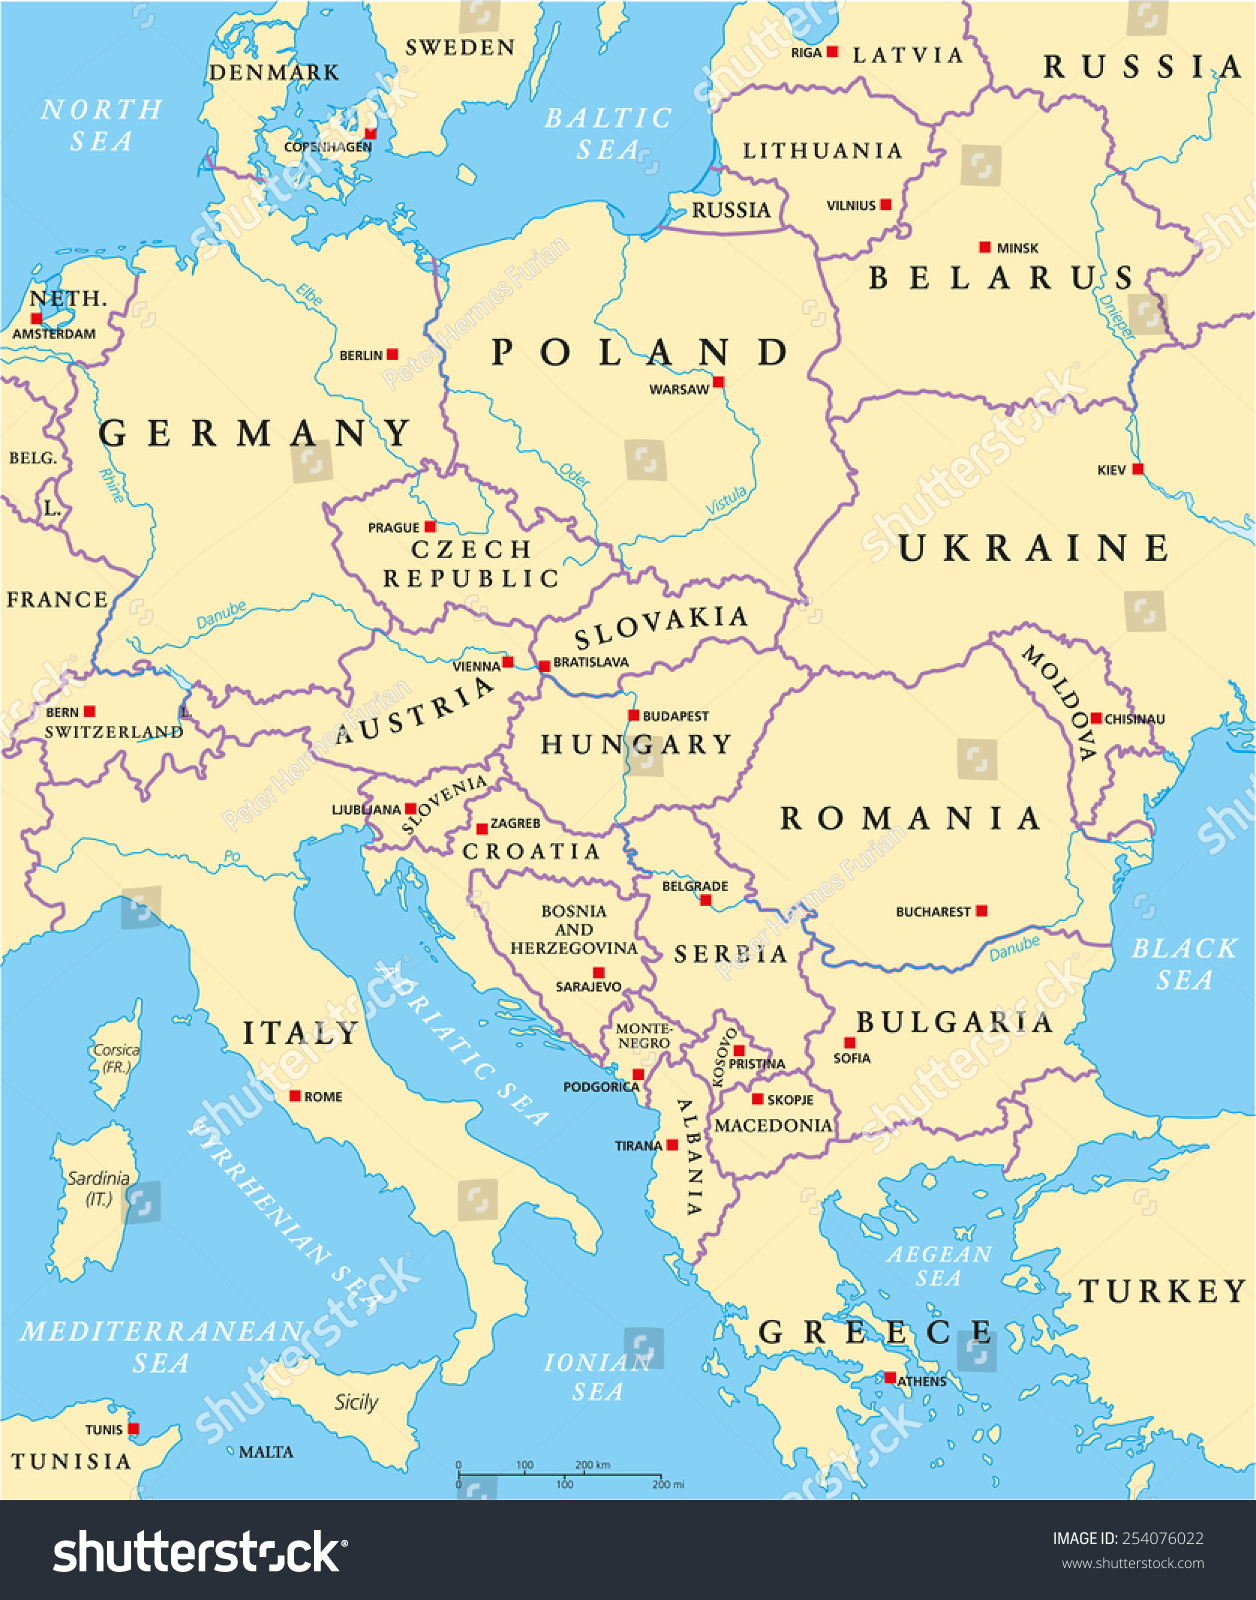 Image Vectorielle De Stock De Carte Politique De L&amp;#039;europe concernant Carte Capitale Europe 